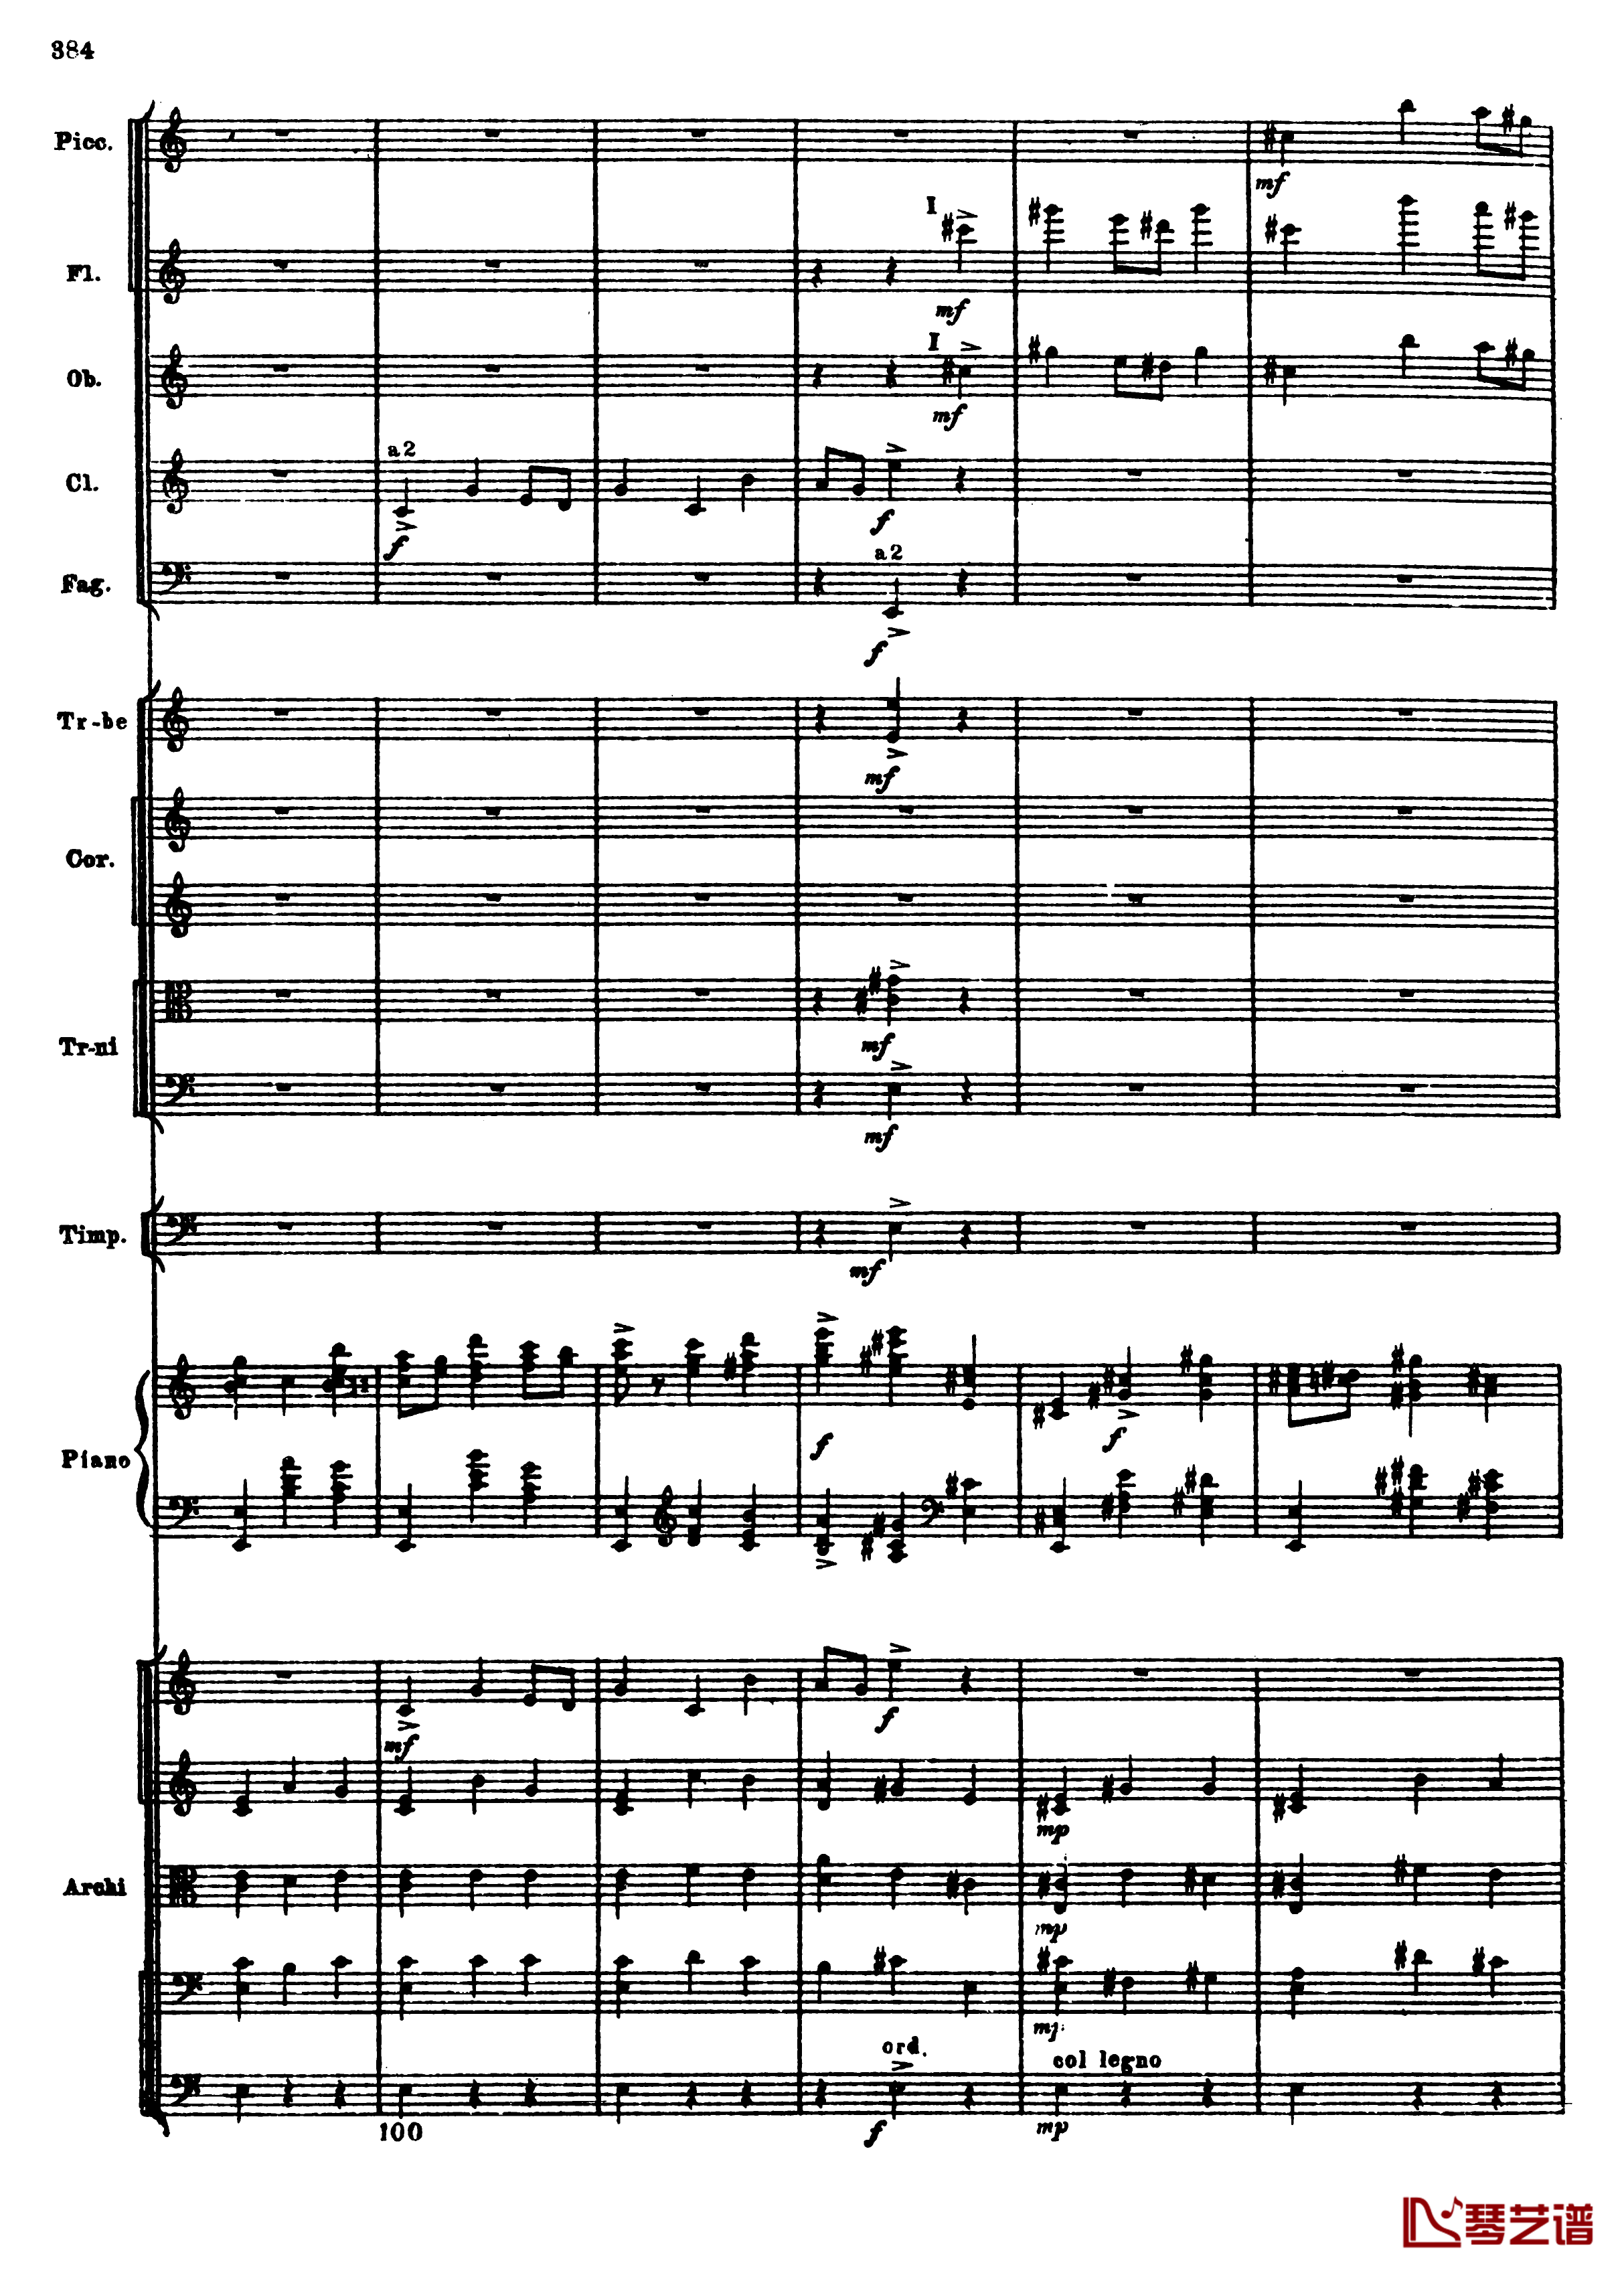 普罗科菲耶夫第三钢琴协奏曲钢琴谱-总谱-普罗科非耶夫116